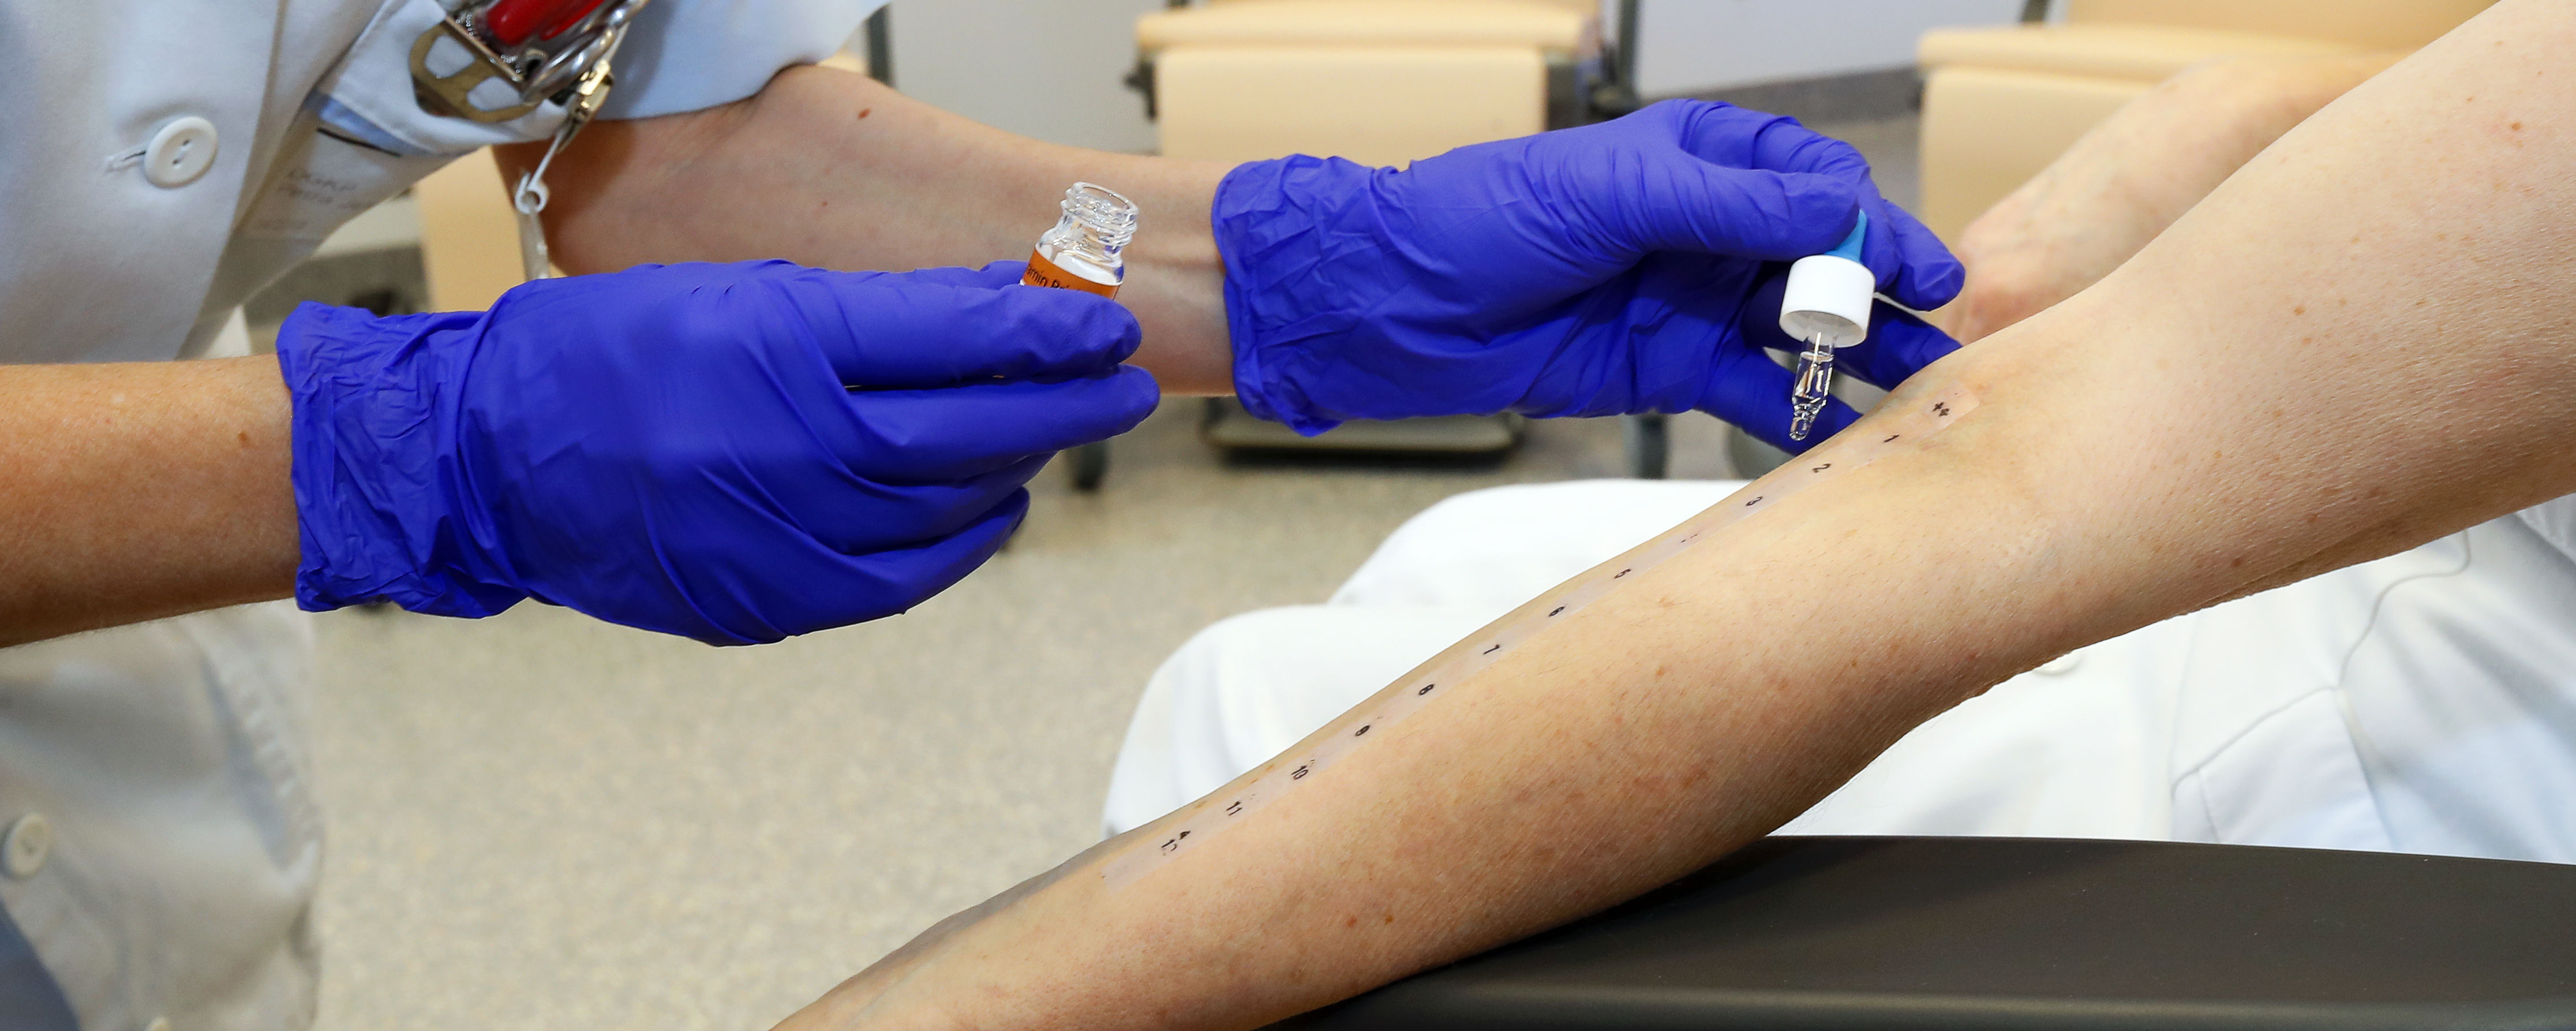 Allergietest wird am Arm durchgeführt.